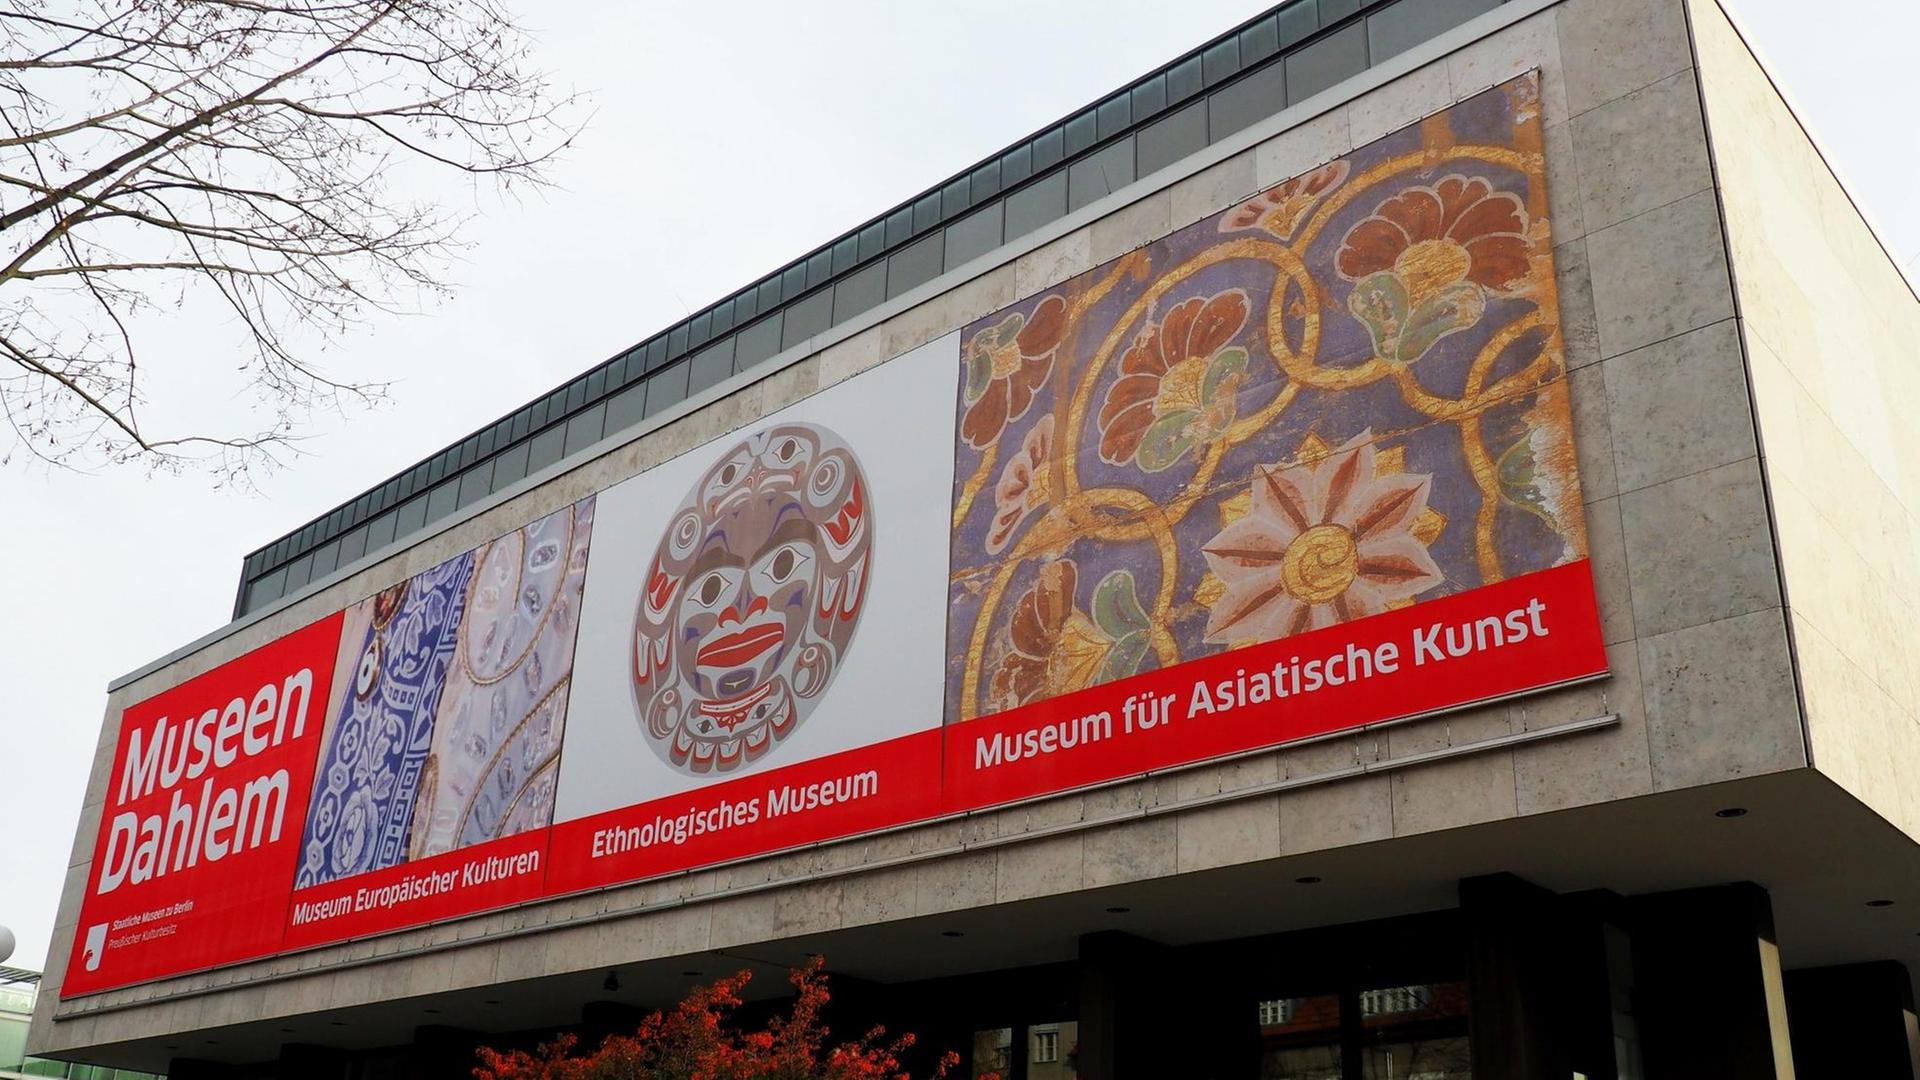 Das Gebäude der Museen Dahlem in Berlin. Ein rechteckiger Betonbau auf dem vorne drei Plakate zu sehen sind, die auf die Sammlungen im Haus verweisen: Das Museum europäischer Kulturen, das Ethnologische Museum und das Museum für Asiatische Kunst. Nur das erstgenannte befindet sich noch an diesem Standort.